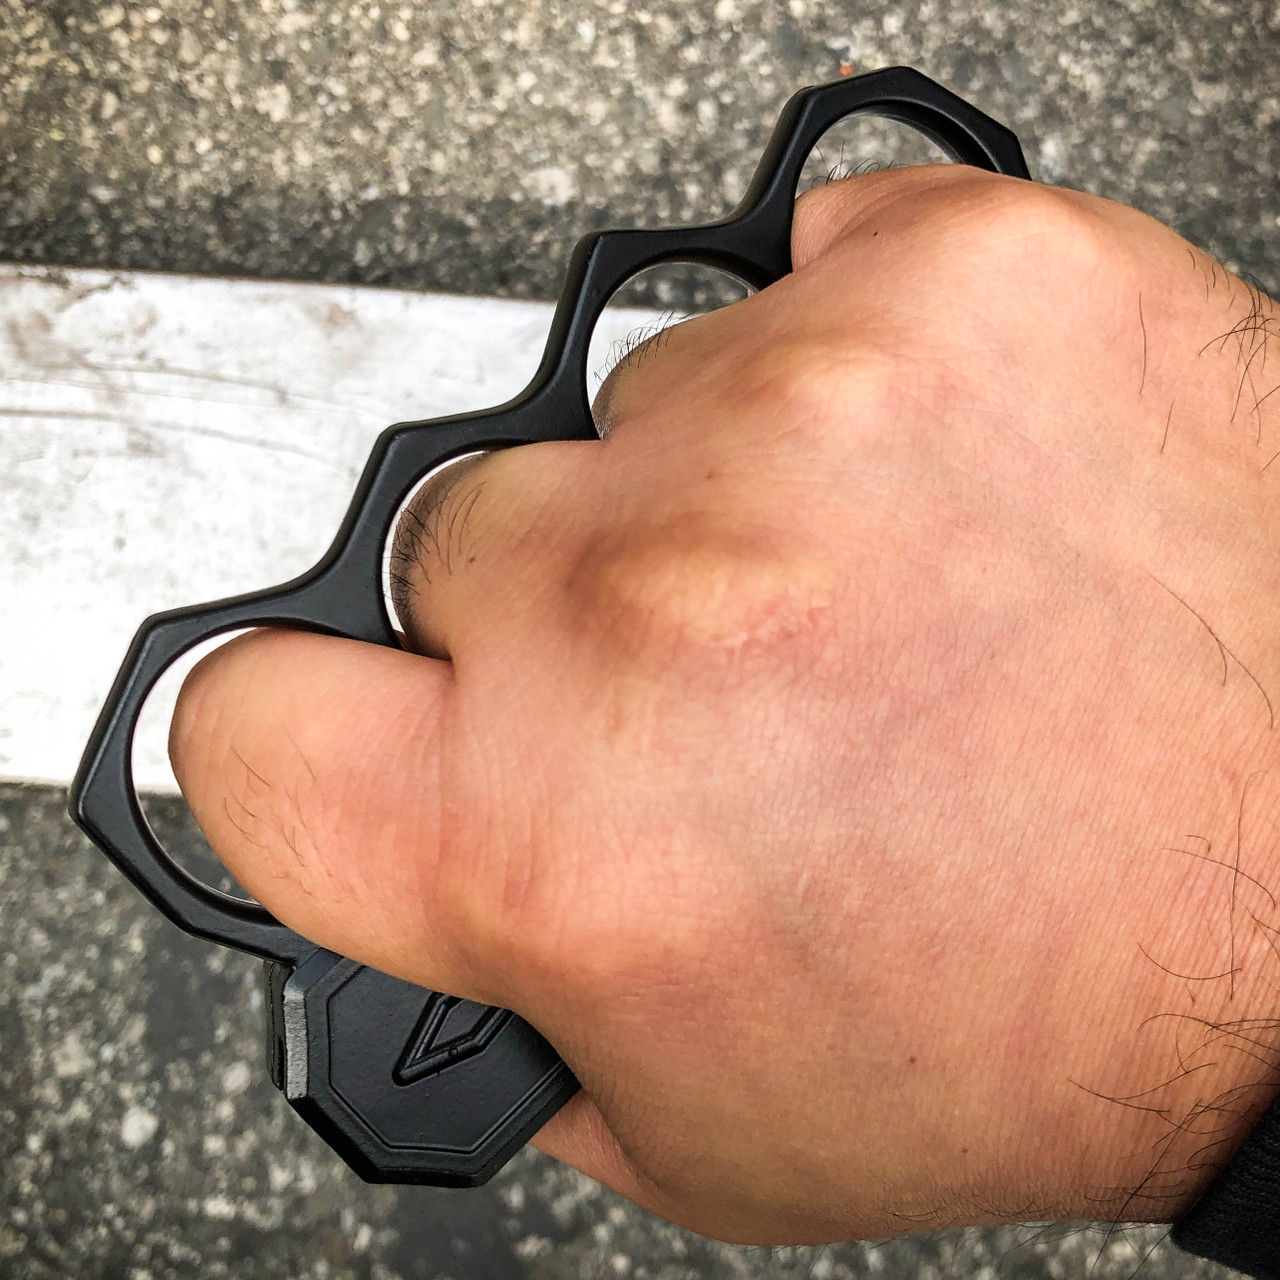 Punisher OTF Dual Action Knife For Sale - MEGAKNIFE